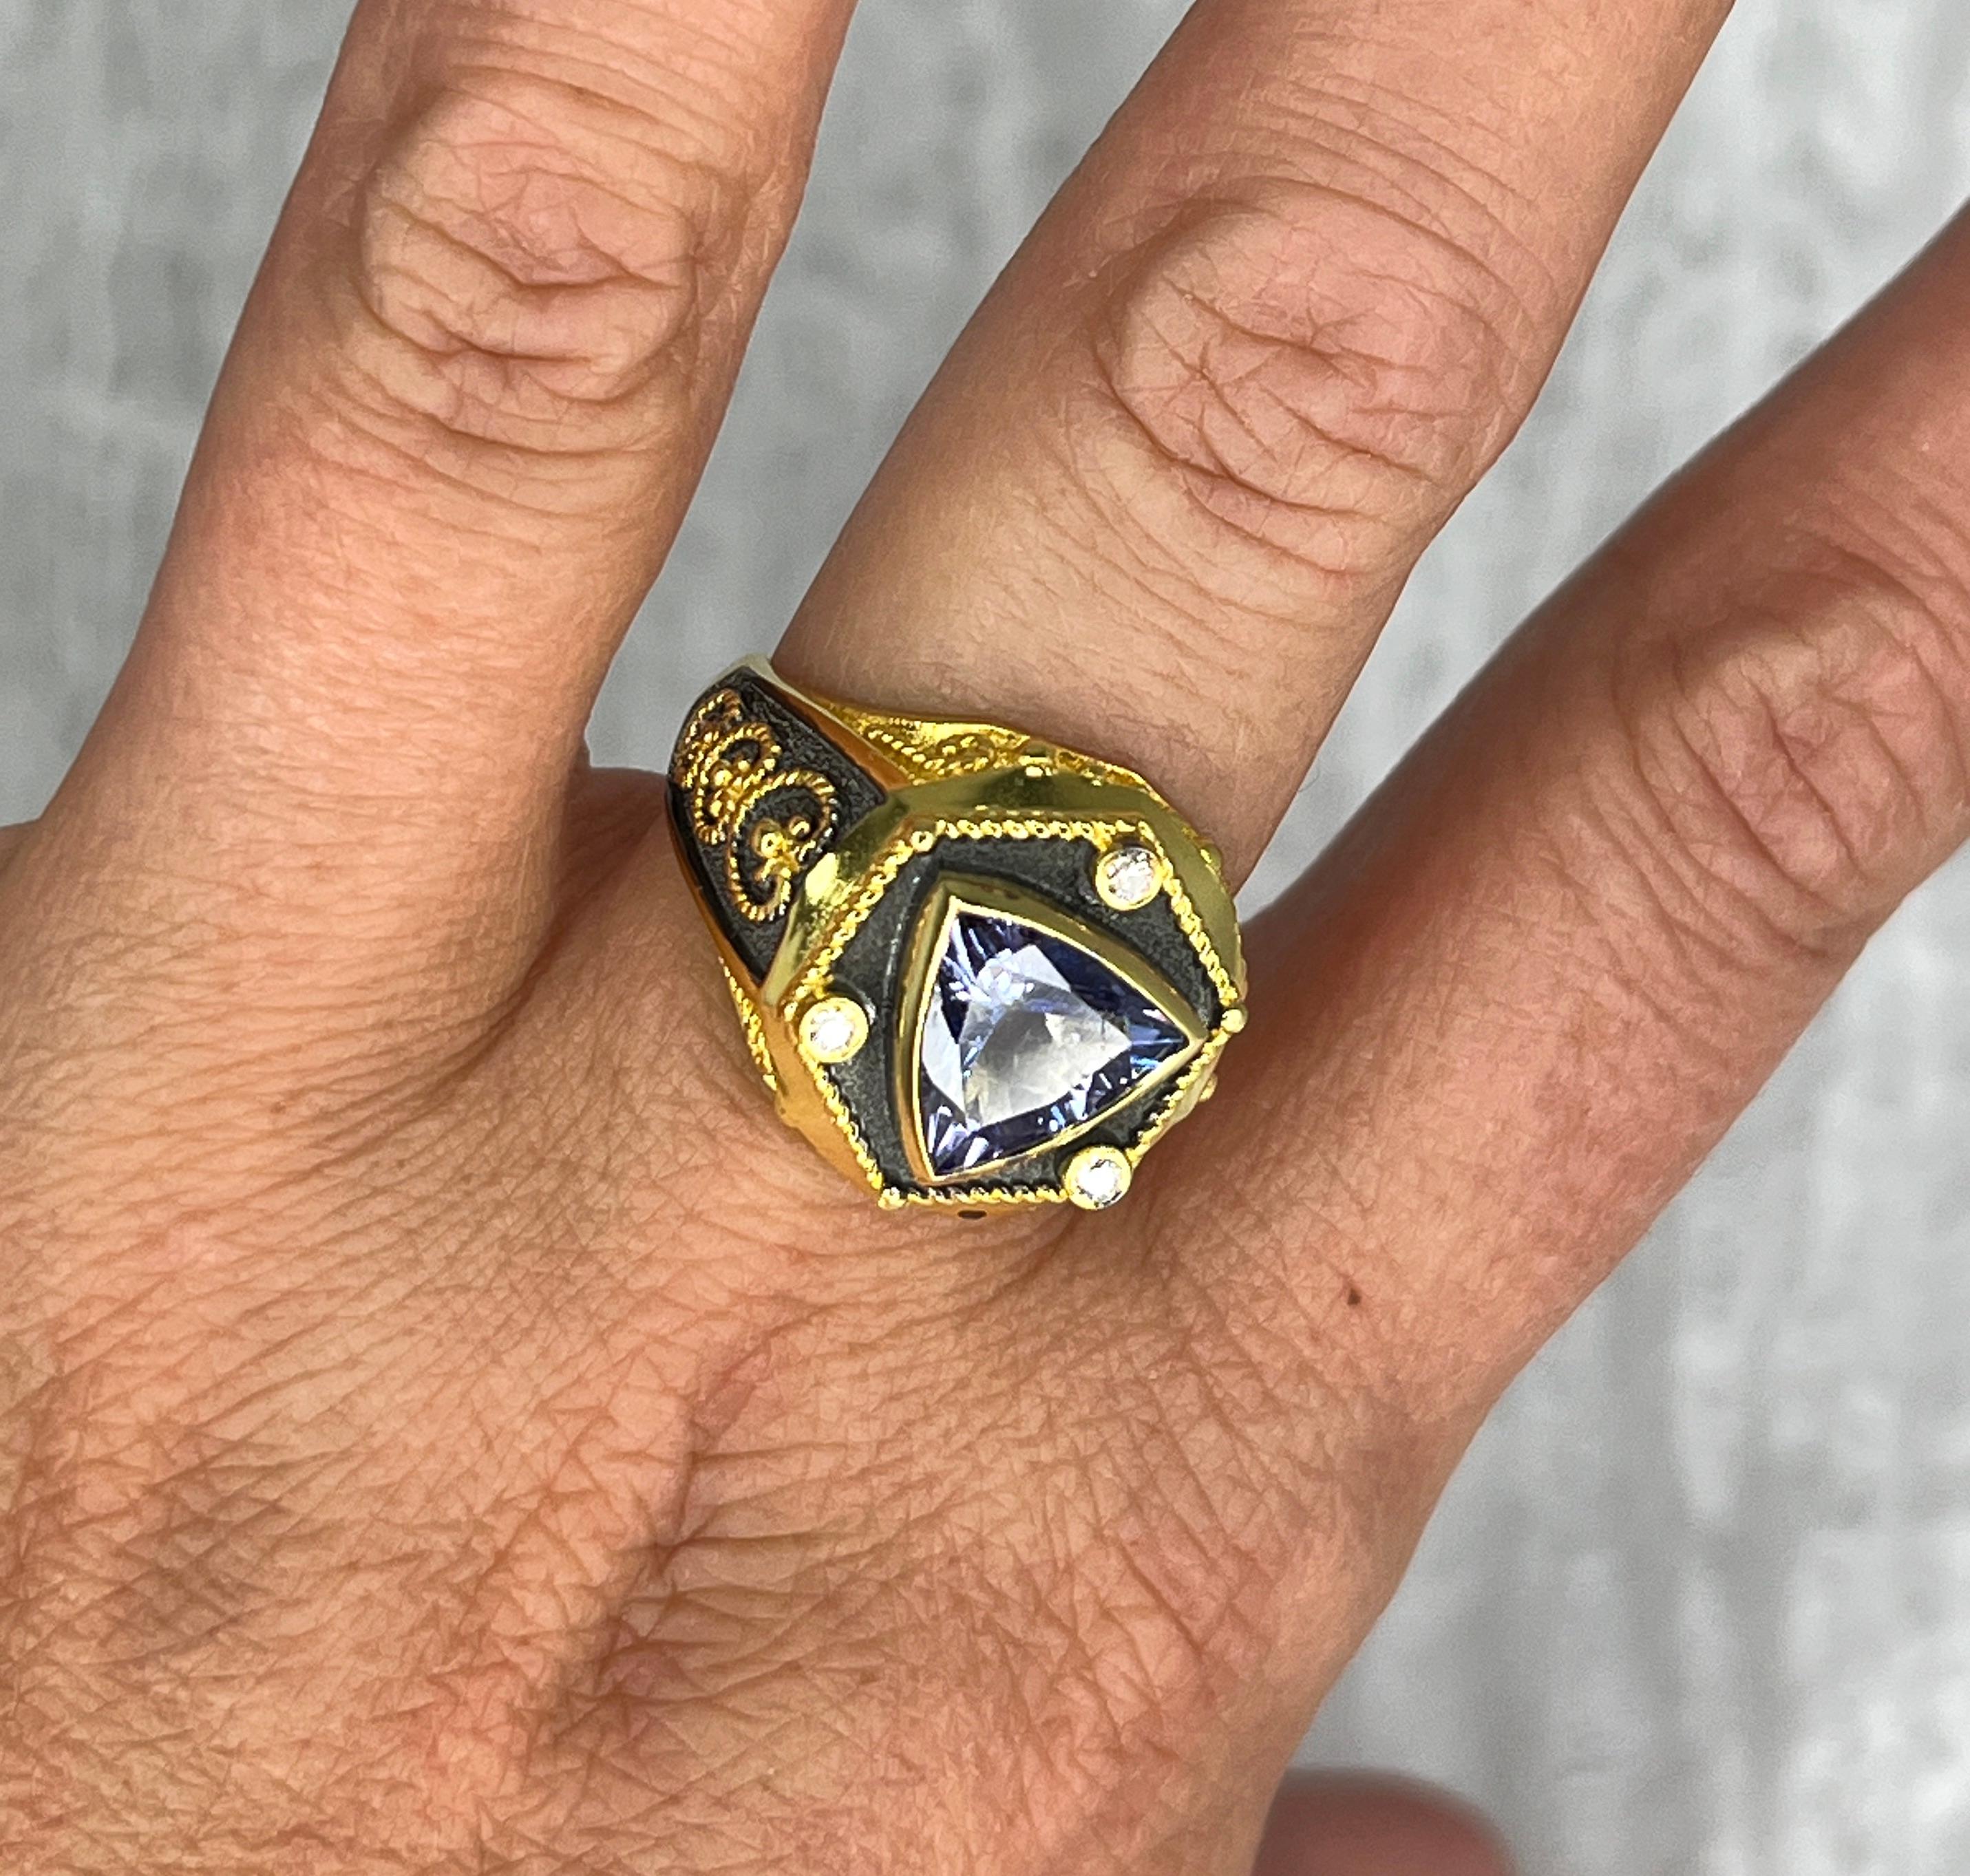 Dieser einzigartige Designer-Ring für Damen und Herren von S.Georgios ist handgefertigt aus 18 Karat Gelbgold in Kombination mit schwarzem Rhodium. Es ist im byzantinischen Stil mit Granulation und gedrehten Drähten auf einem mit Samt ausgelegten